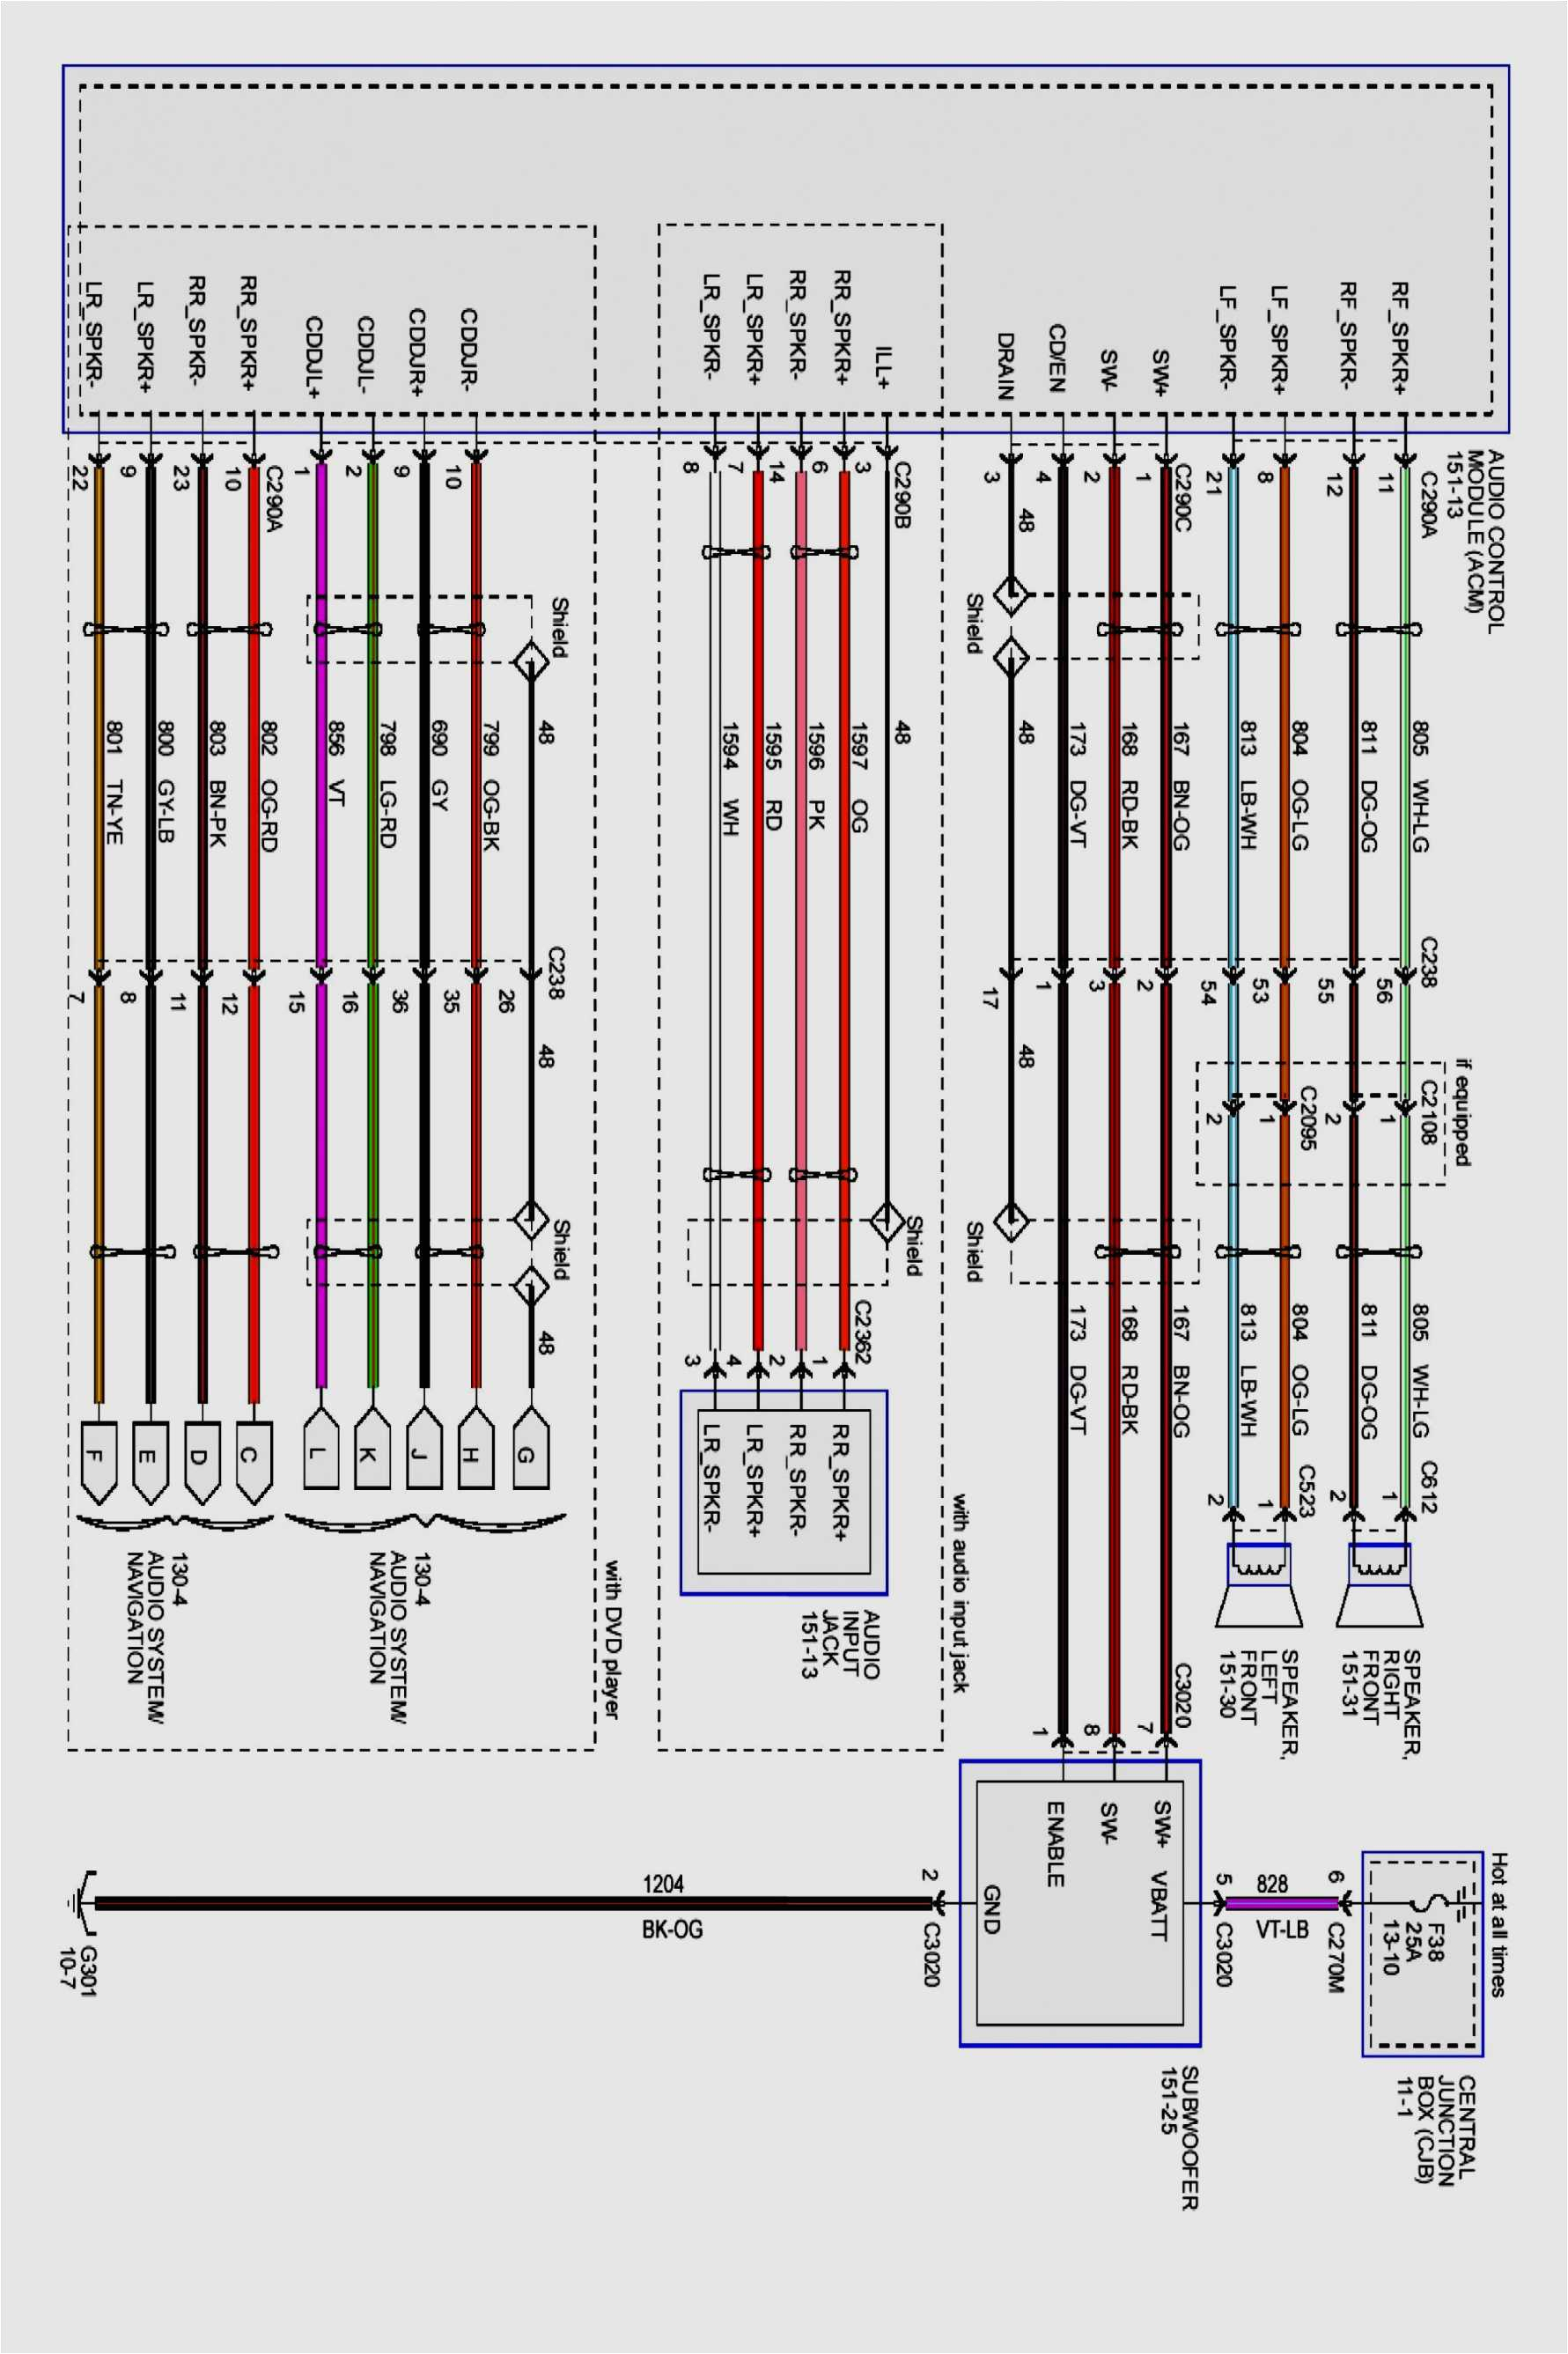 2001 ford f150 radio wiring diagram gm radio wiring diagram best car radio wiring diagram http wikidiyfaqorguk 0 0d splanwiring